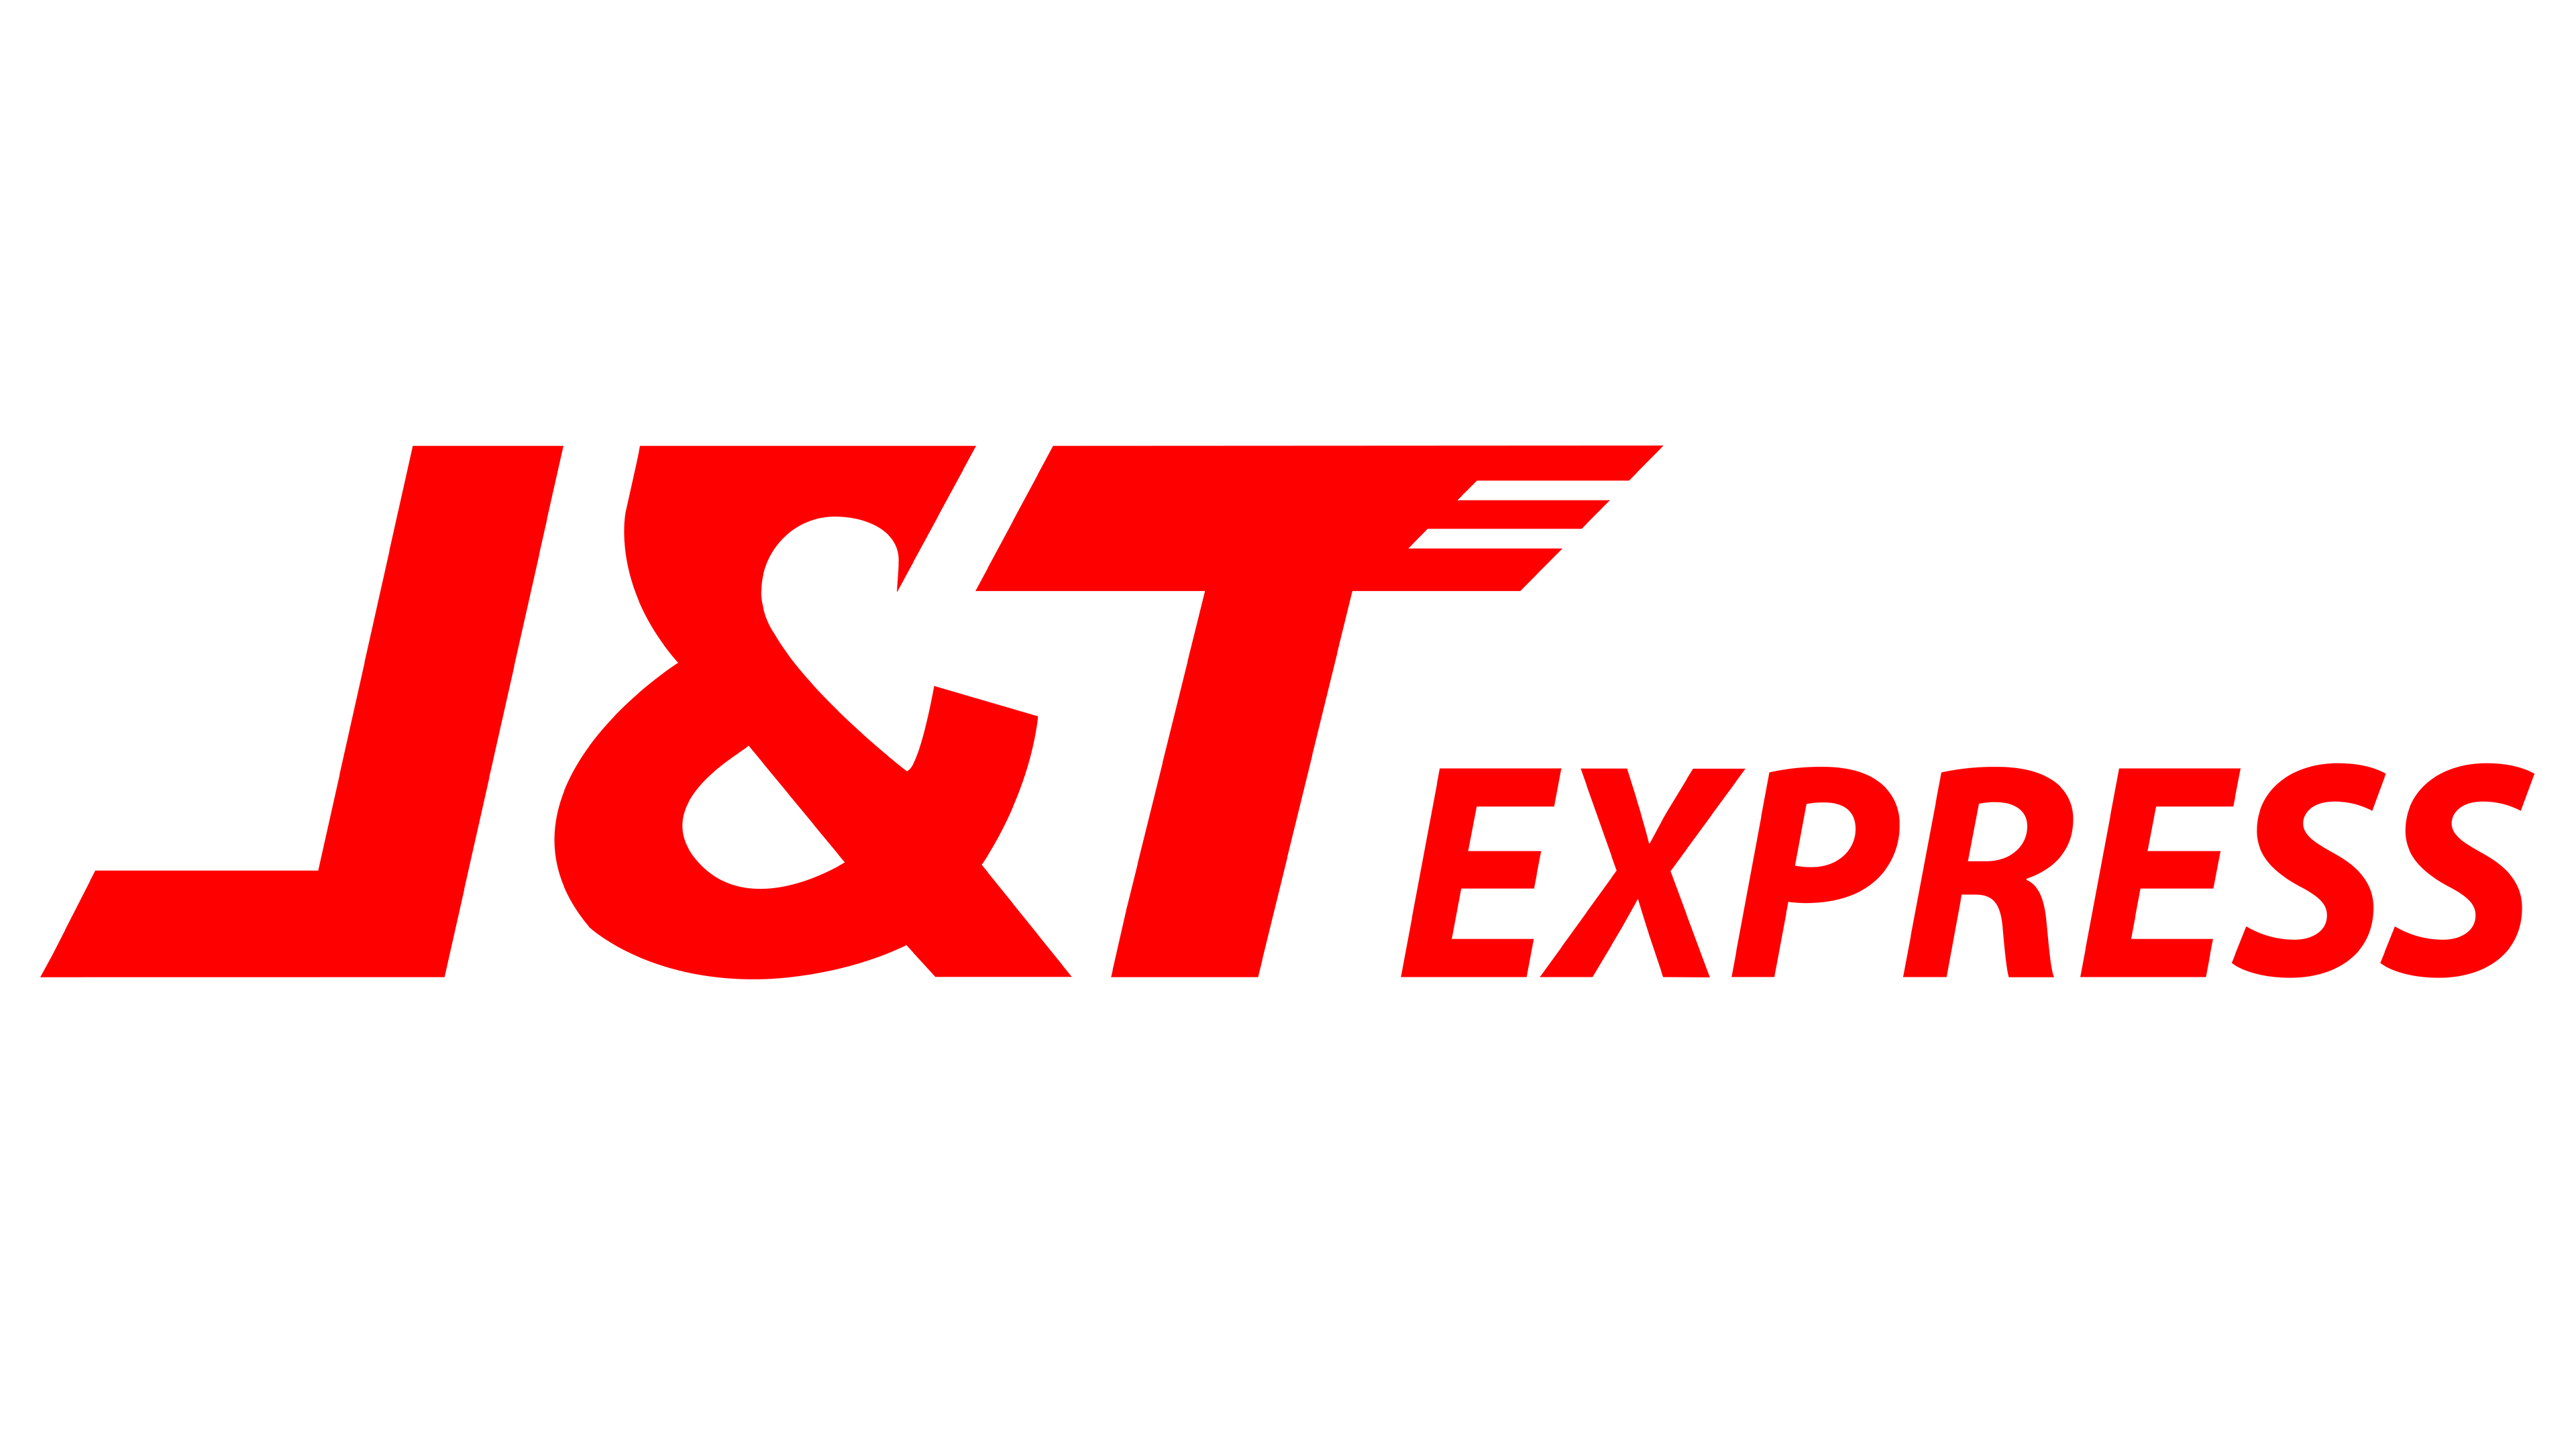 J&T Express Logo PNG